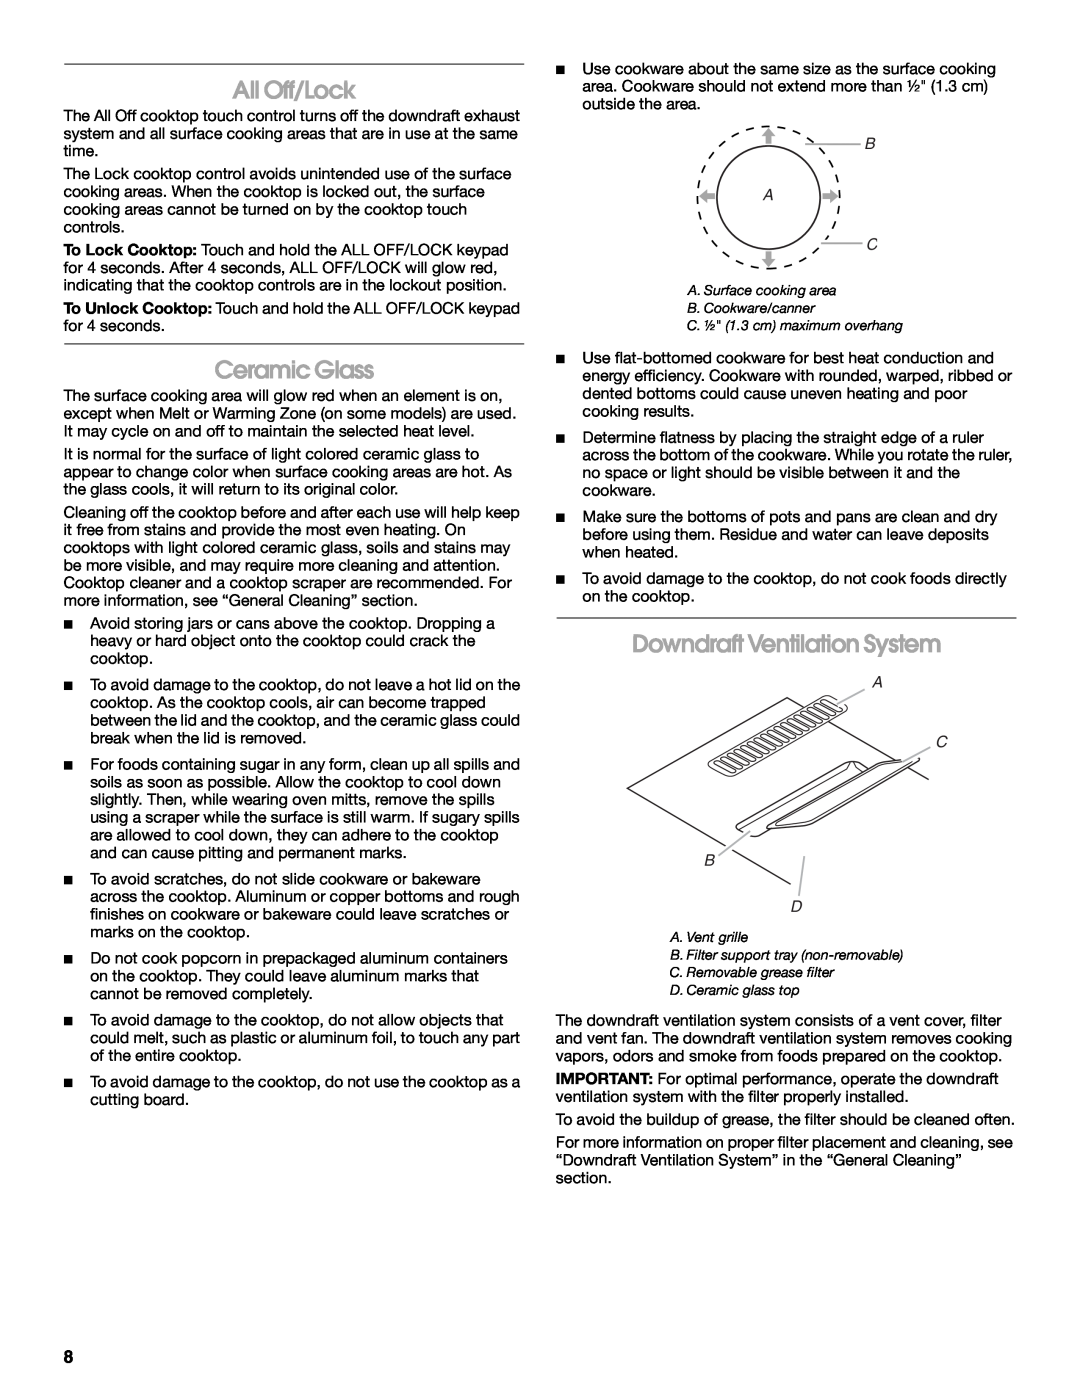 Jenn-Air W10197057B manual All Off/Lock, Ceramic Glass, Downdraft Ventilation System, B A C, A C B D 